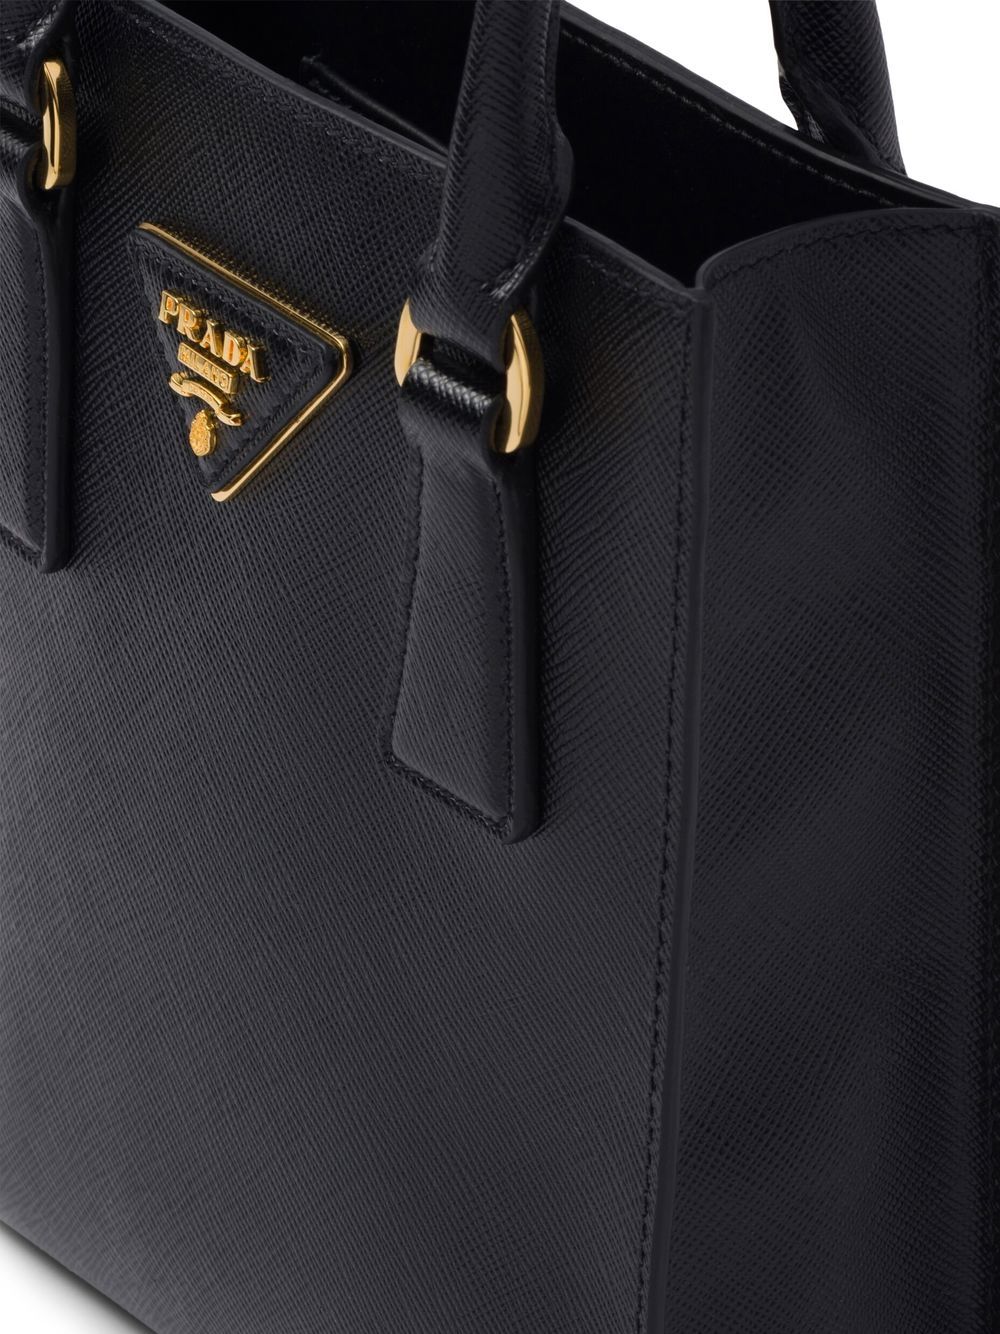 Black Saffiano Leather Shoulder Bag, PRADA